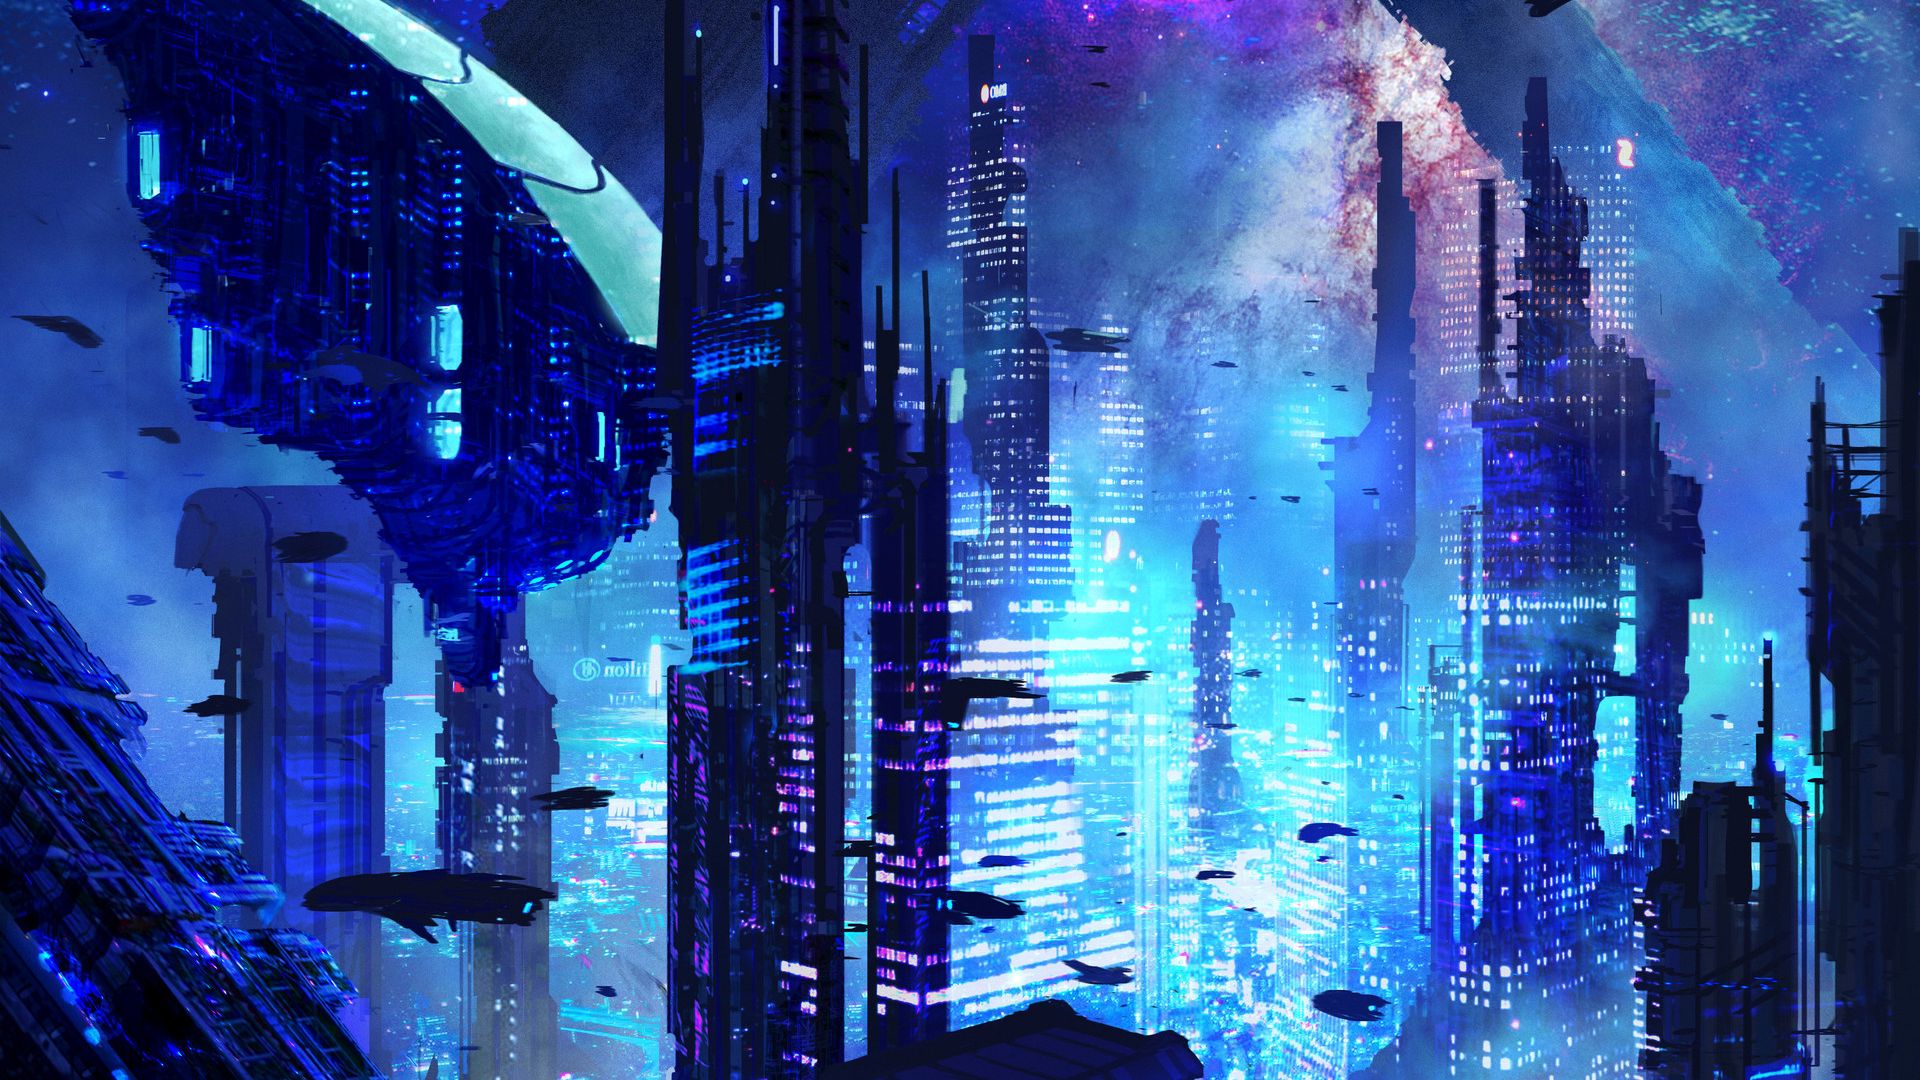 Futuristic Sci Fi Night City Background, Future, Sci Fi City, Night  Background Image And Wallpaper for Free Download